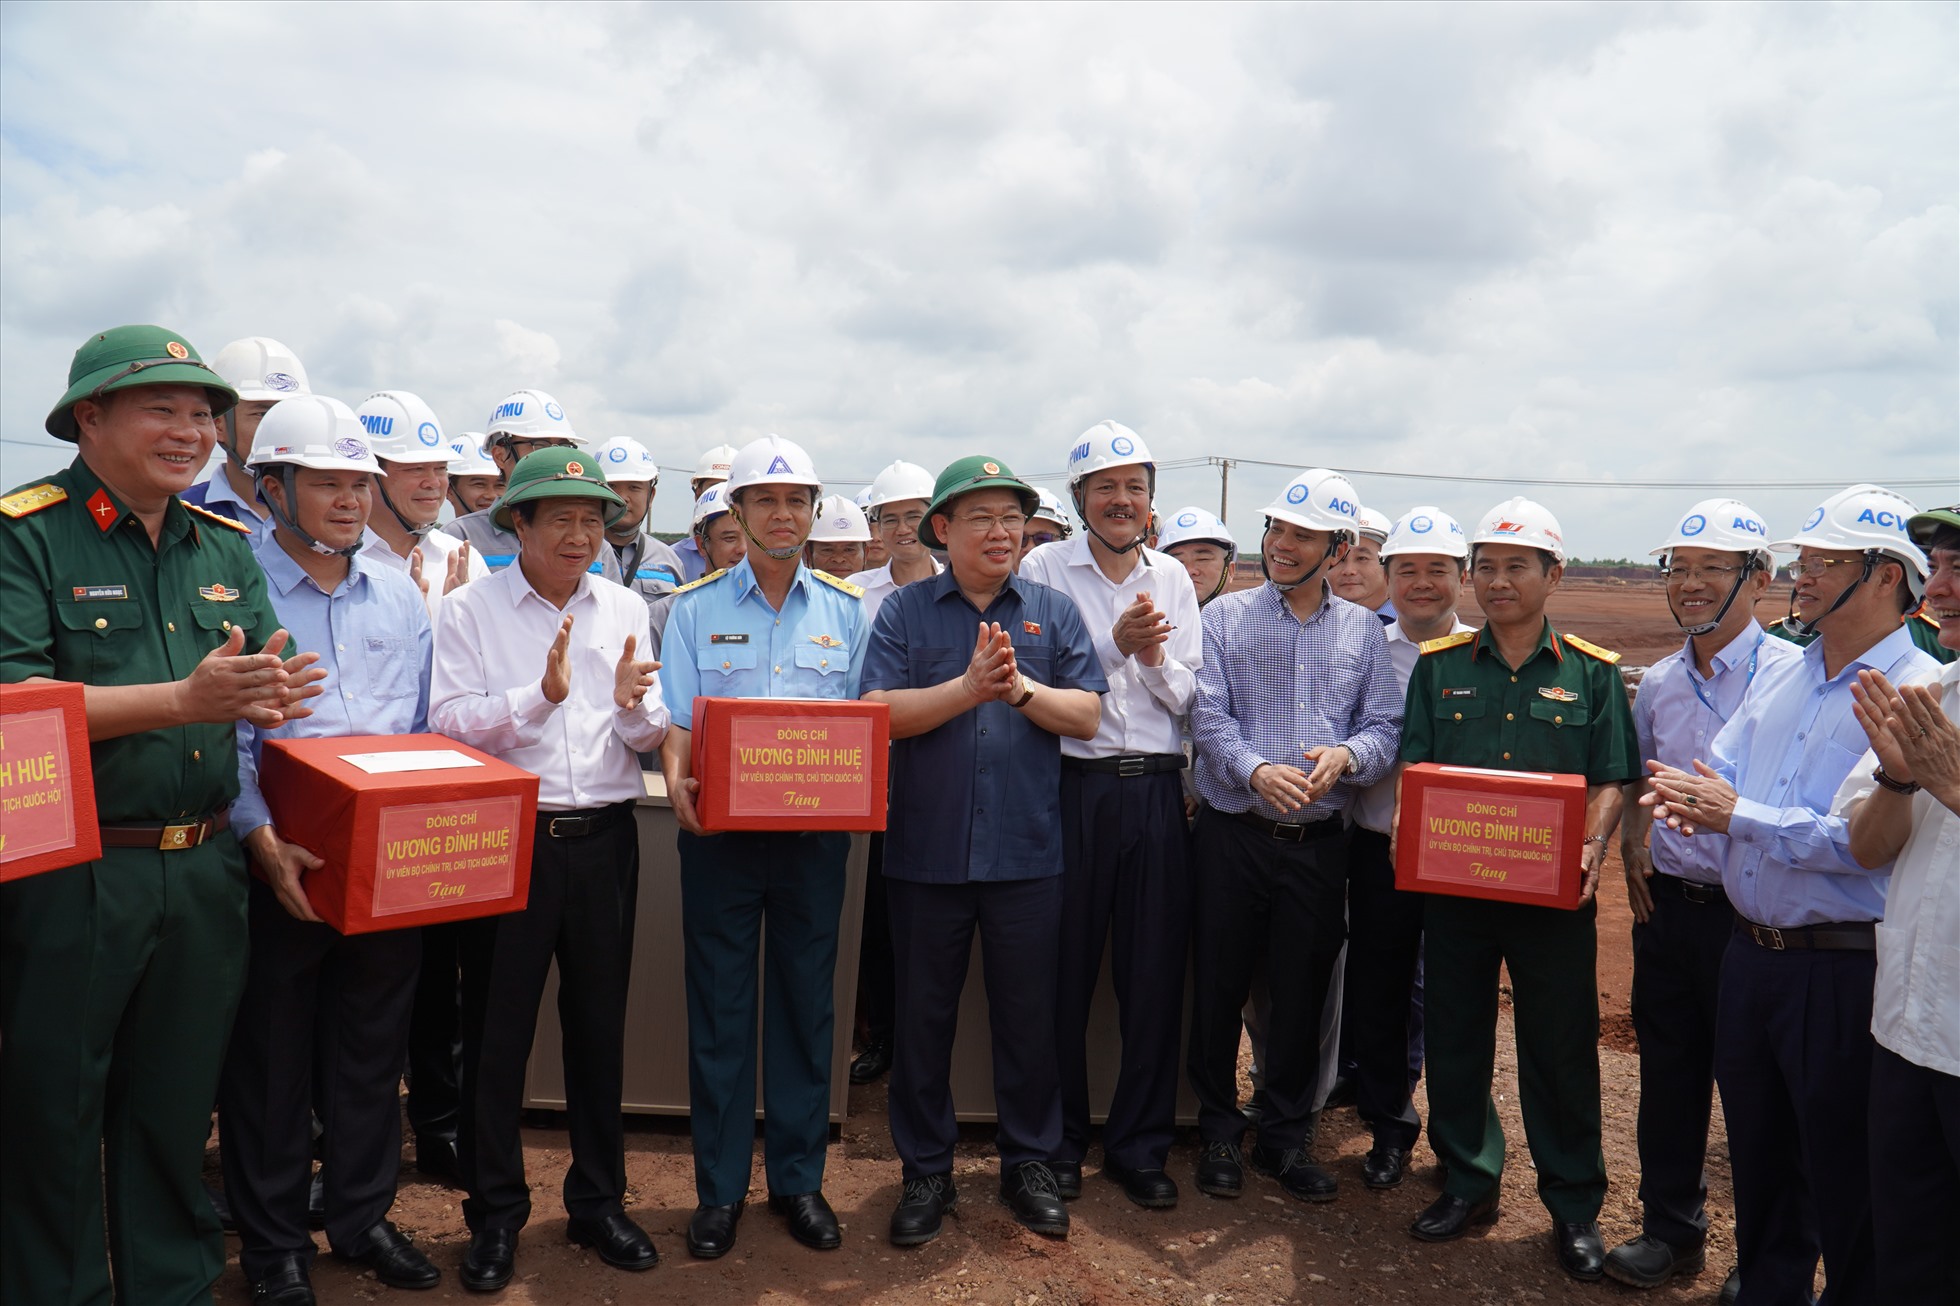 Chủ tịch Quốc hội Vương Đình Huệ tặng quà cho các cán bộ chiến sĩ, nhân viên lao động đang thi công tại dự án sân bay Long Thành giai đoạn 1. Ảnh: Hà Anh Chiến